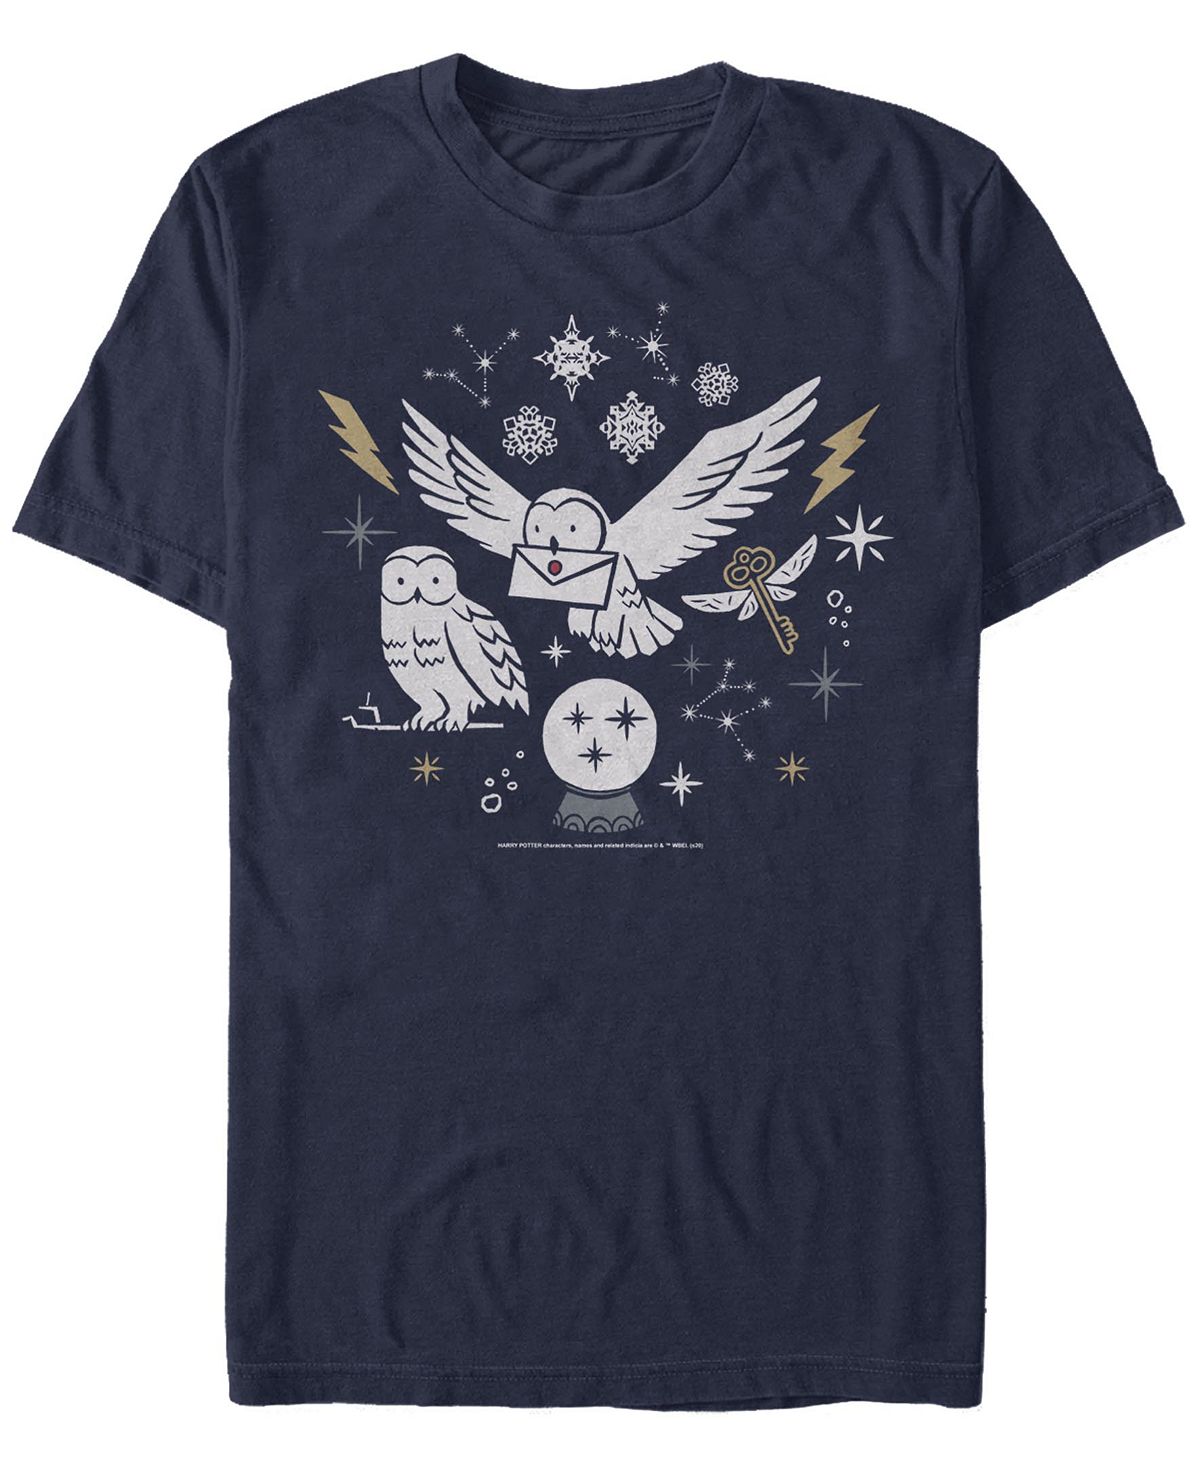 Мужская футболка с круглым вырезом с короткими рукавами wintery owls Fifth Sun, синий